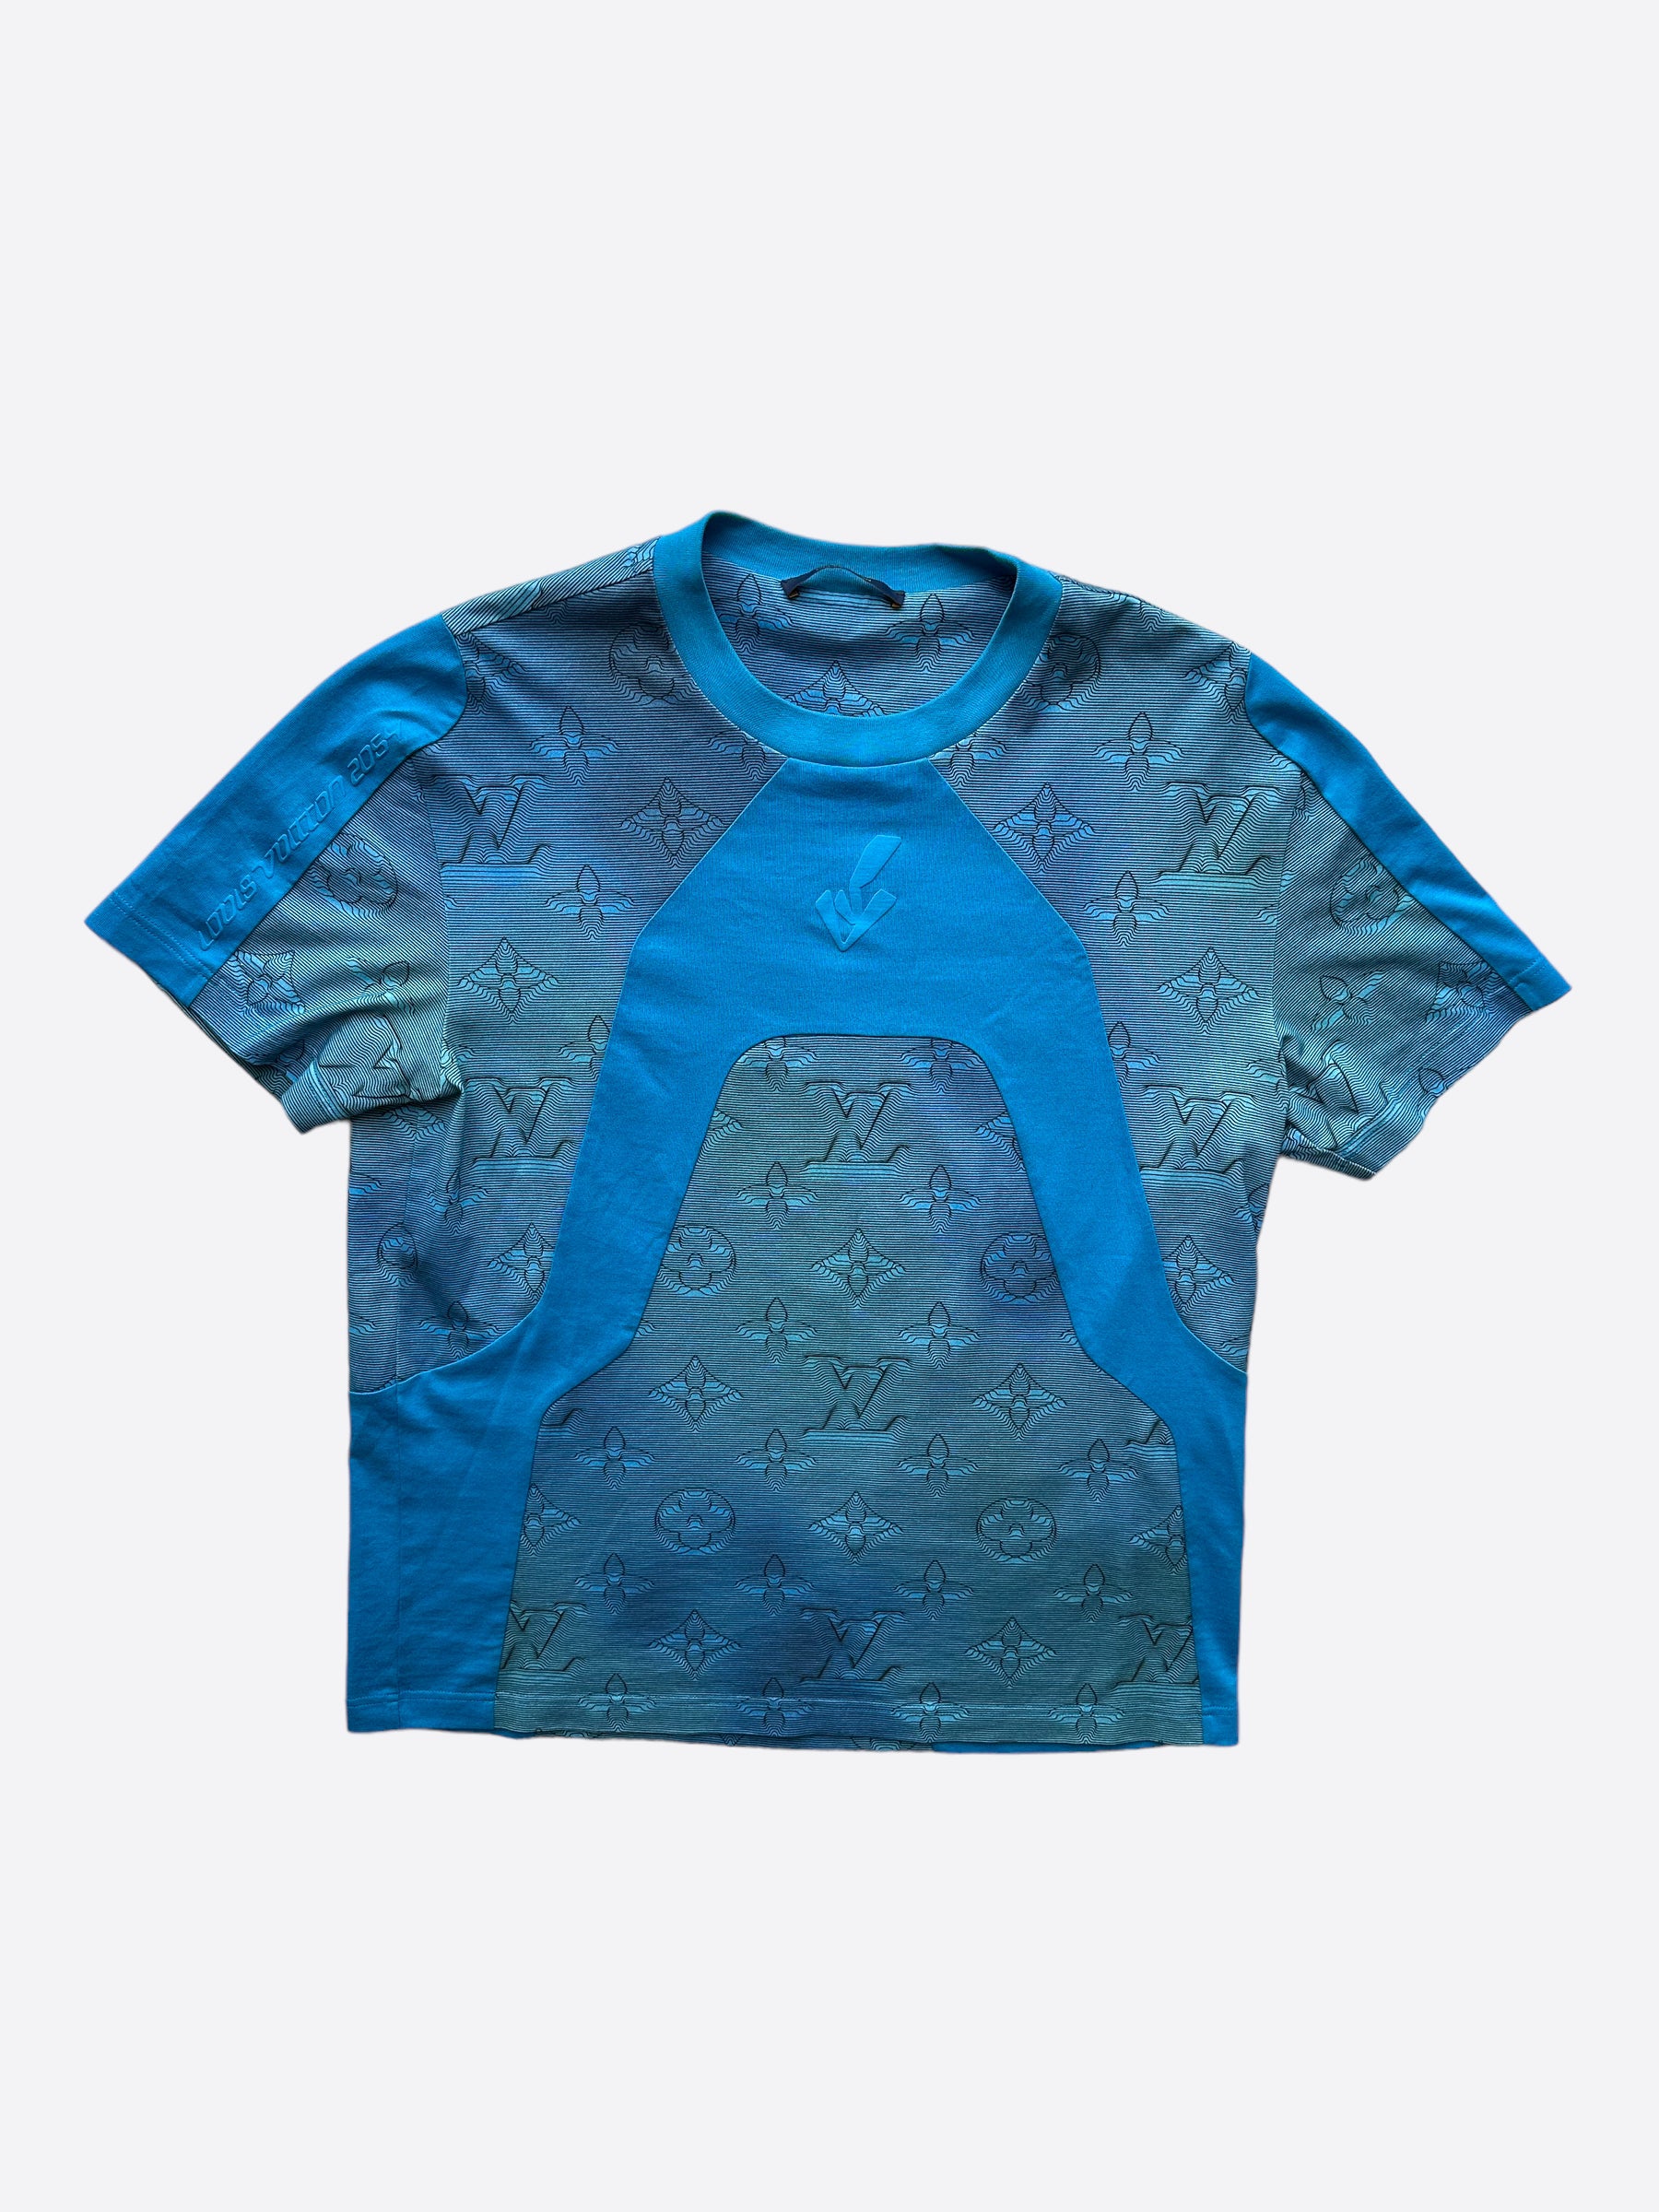 Shop Louis Vuitton Men's Blue T-Shirts